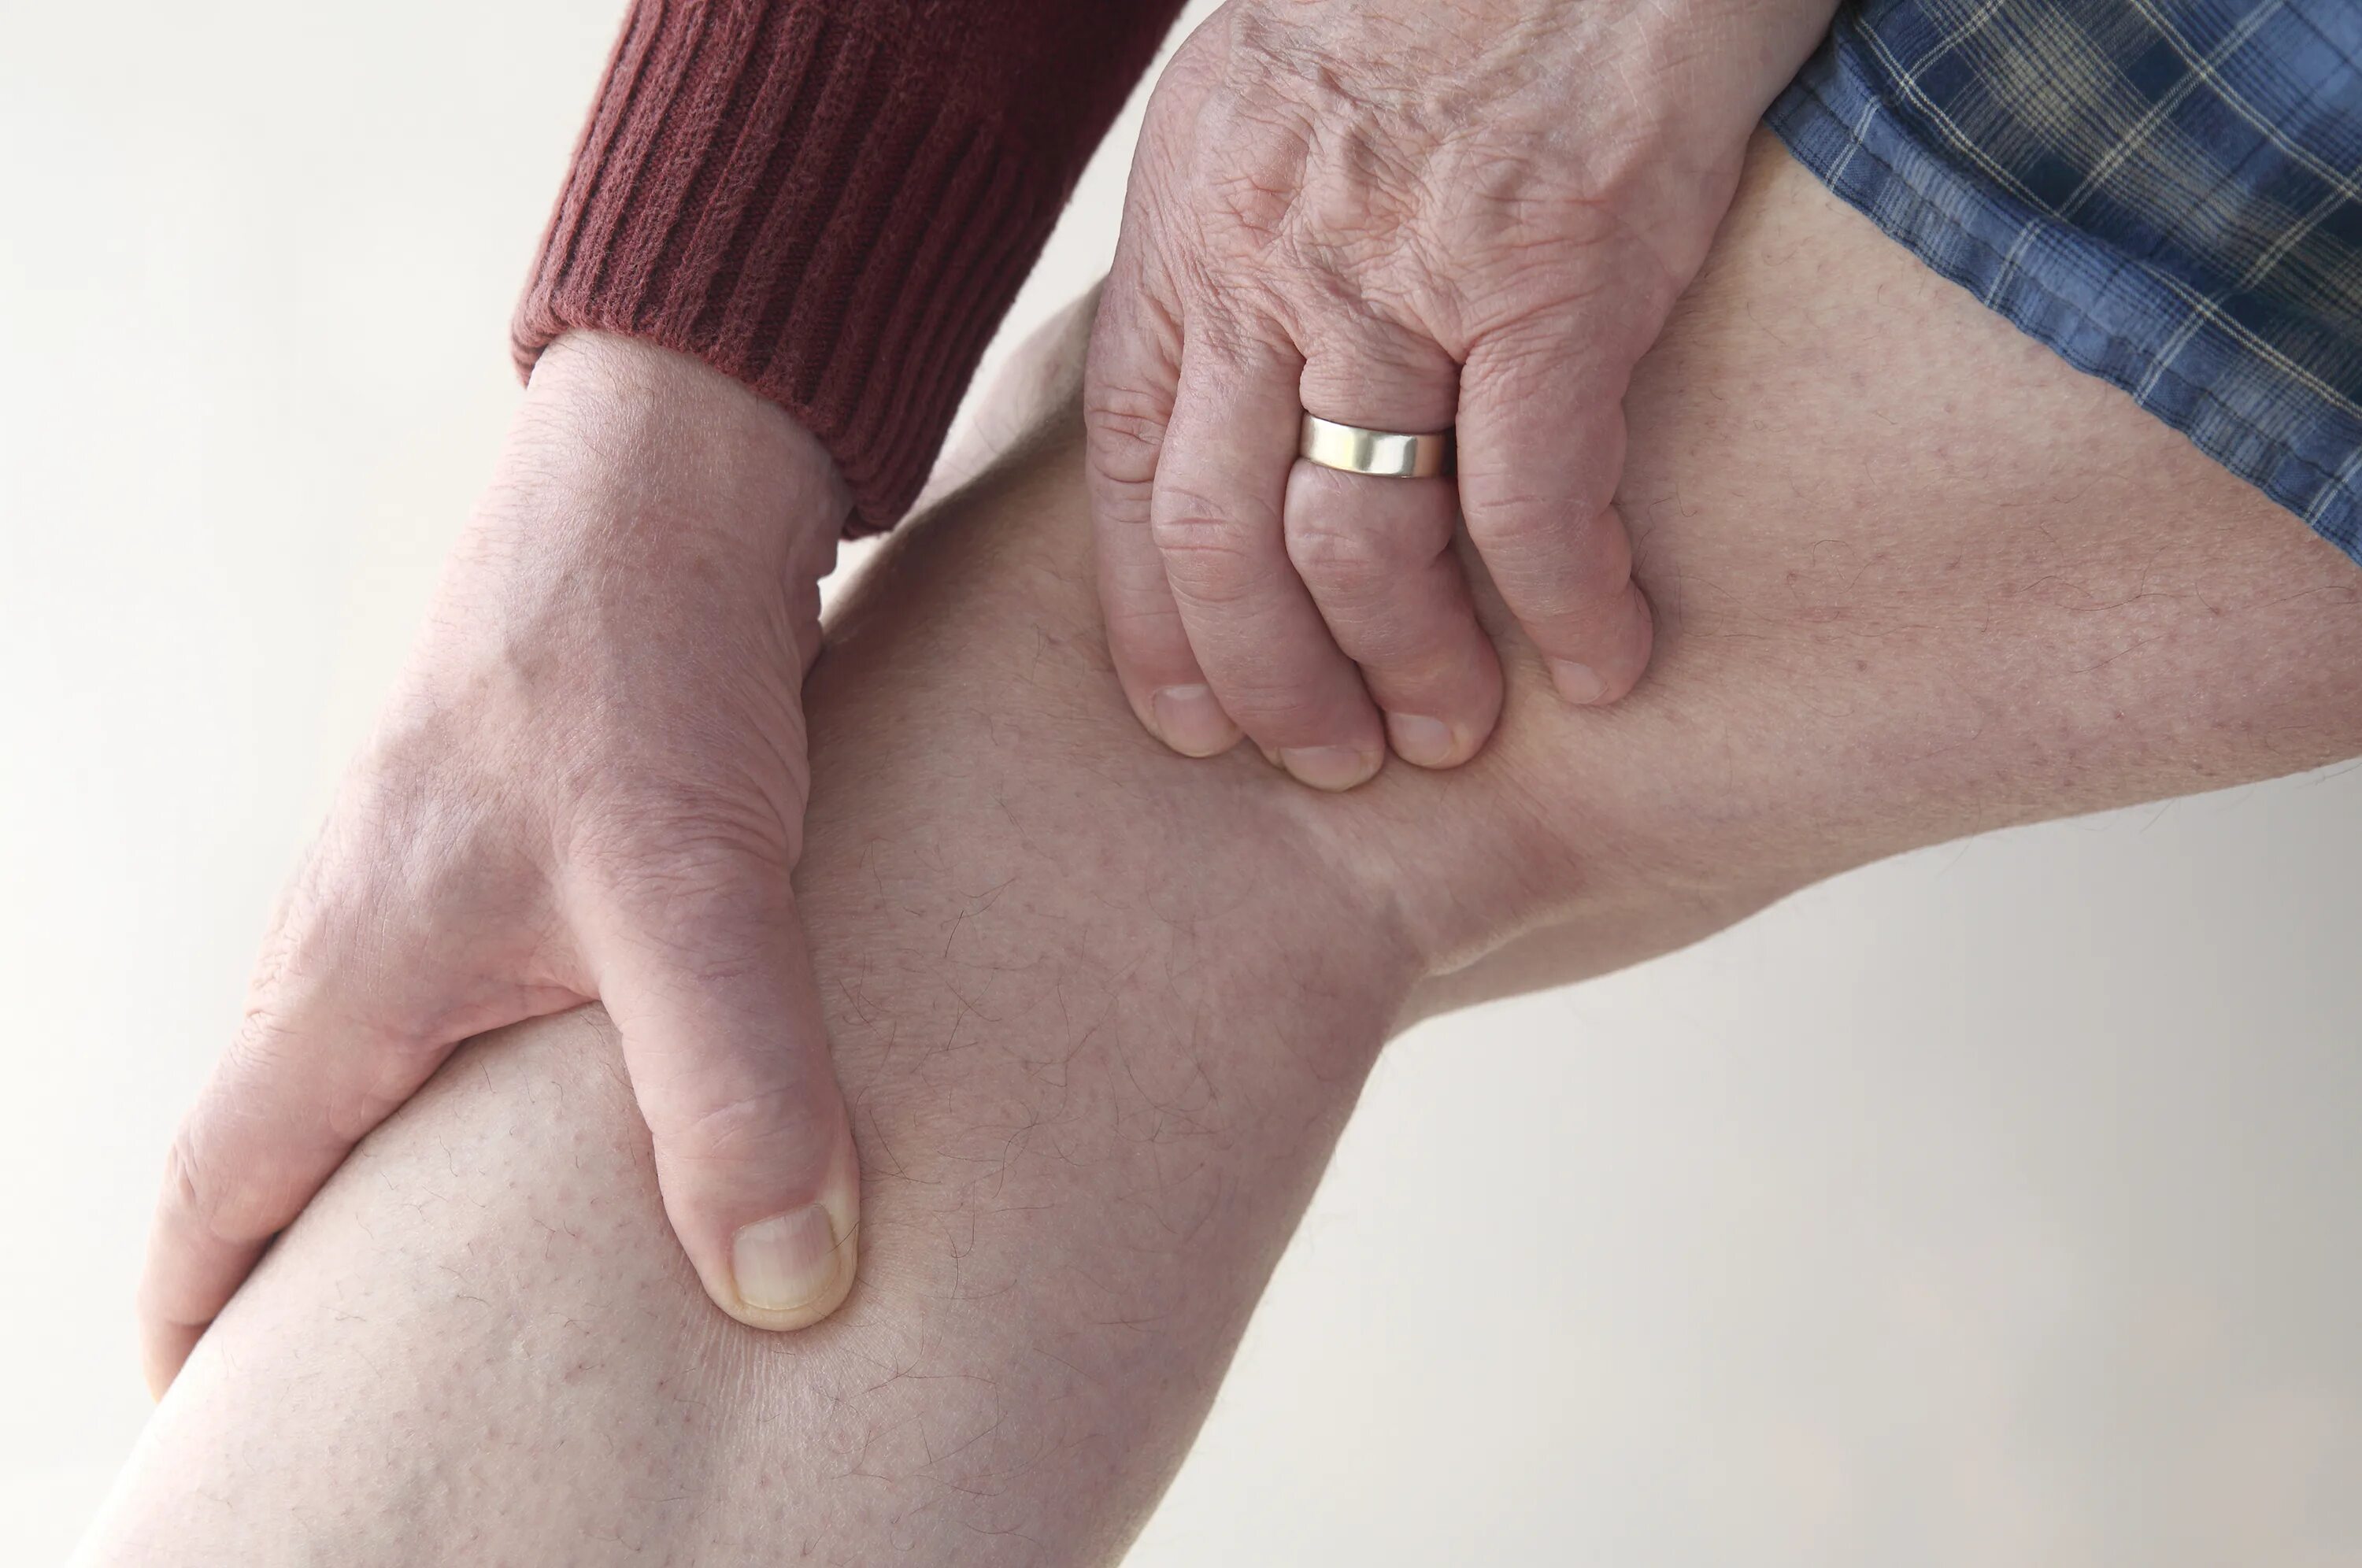 Артралгия коленного сустава. Периартрит коленного сустава. Leg pain